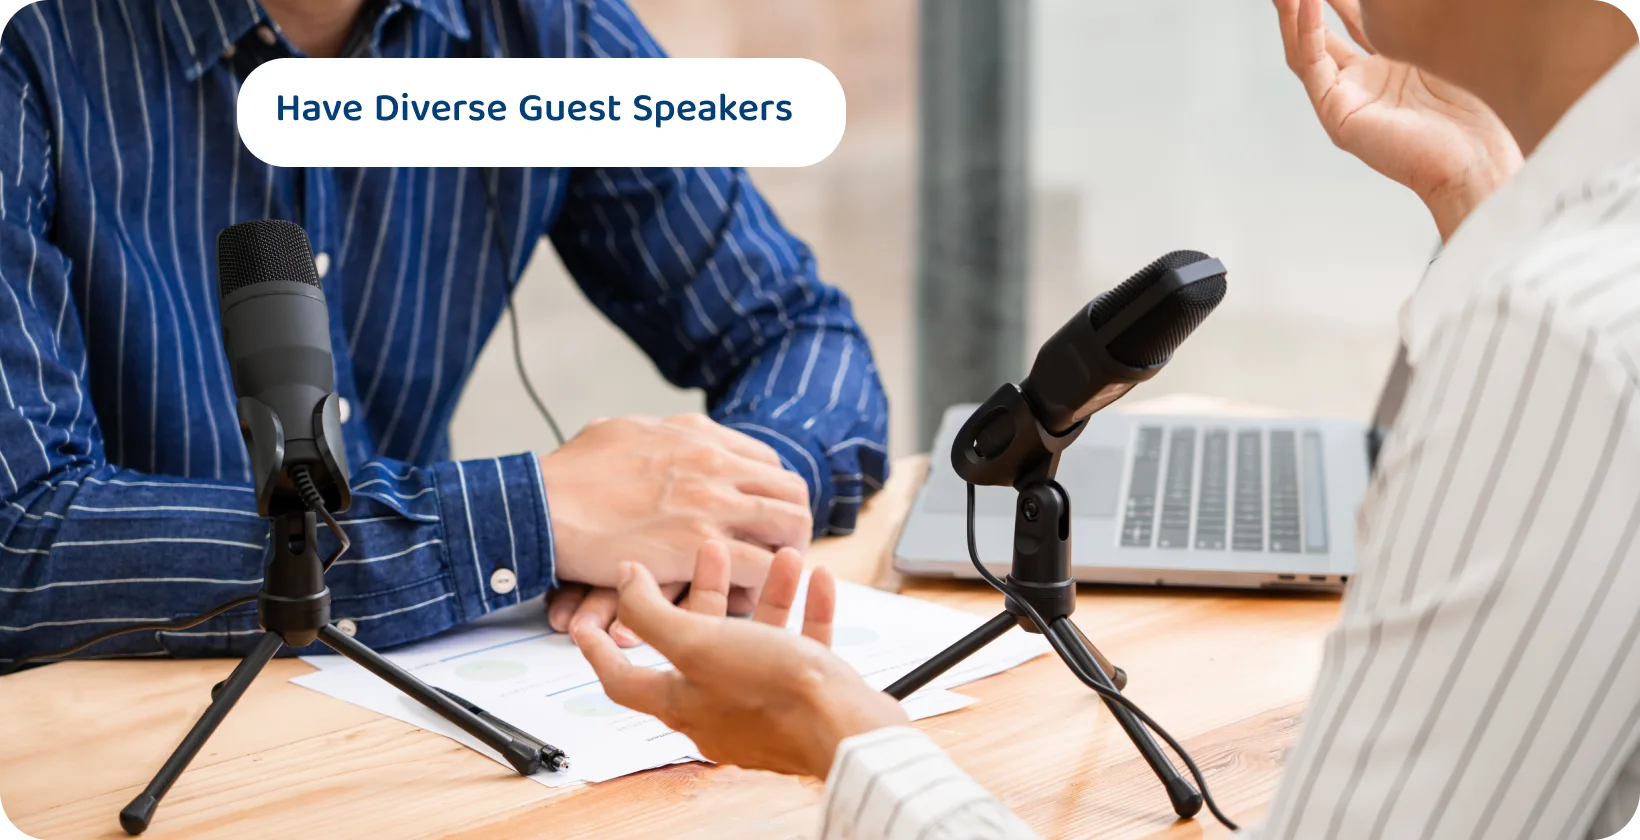 Dva podcastera s mikrofonima koji raspravljaju mogu biti savjeti o sadržaju za zanimljive i raznolike sesije gostujućih govornika.